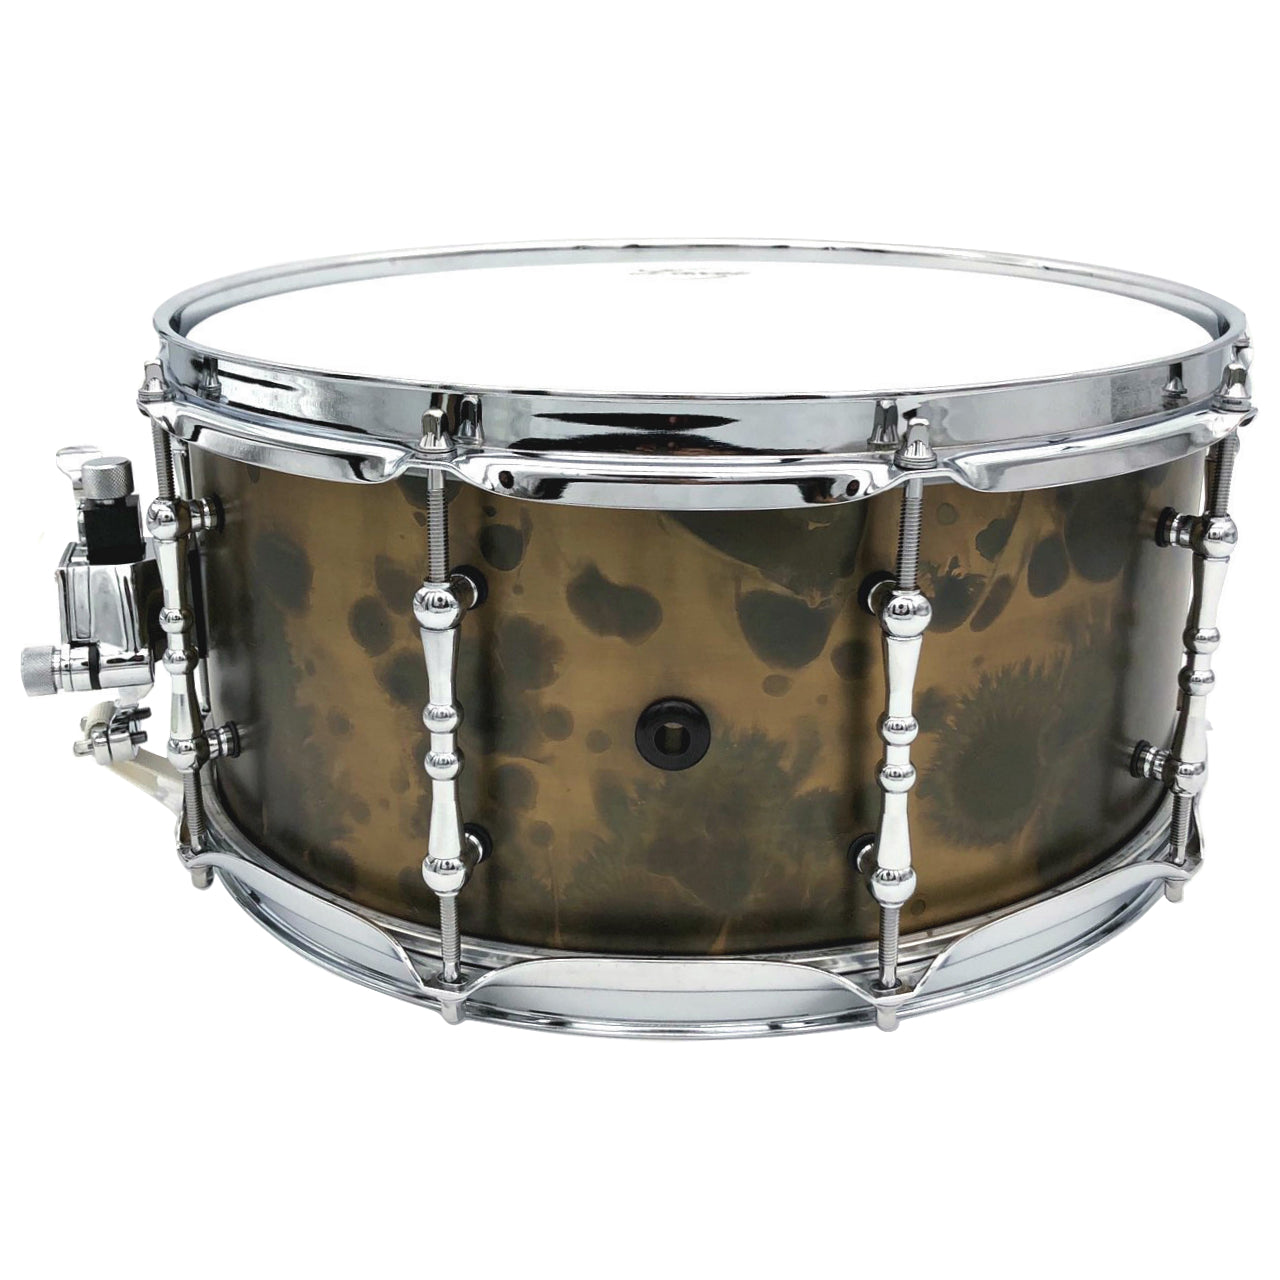 Vintage Brass Snare Drum (SD-25)